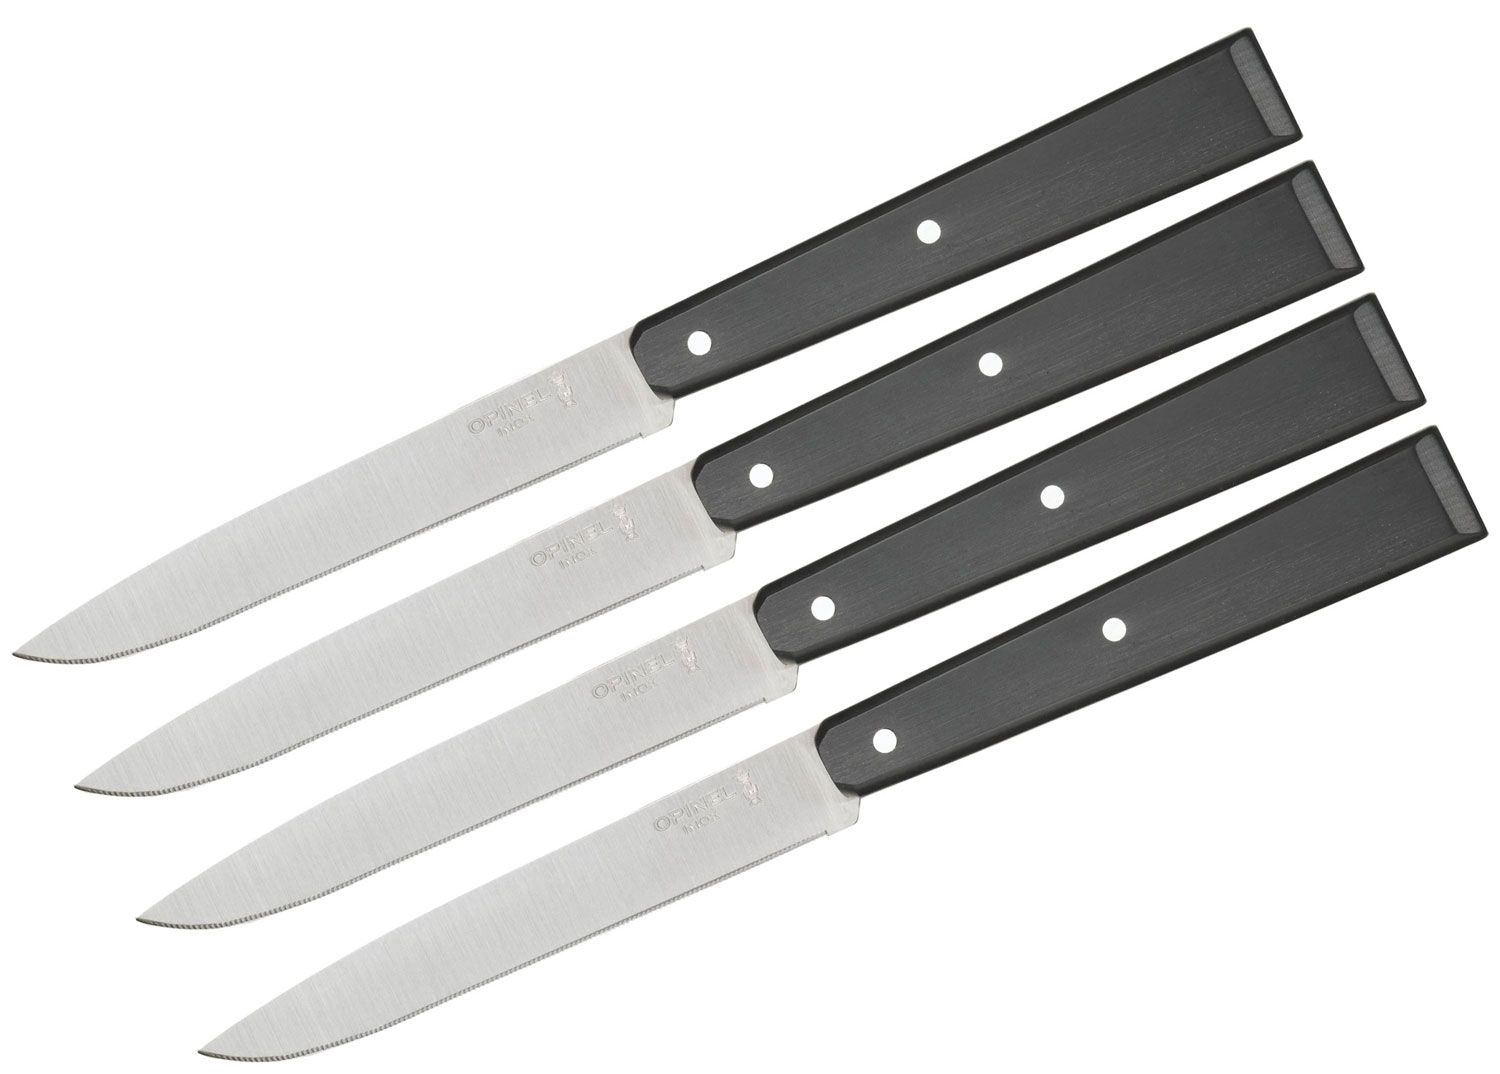 Opinel Bon Appétit Set of 4 No. 125 Pro Steak Knives Set, Black Polymer  Handles - KnifeCenter - 002437